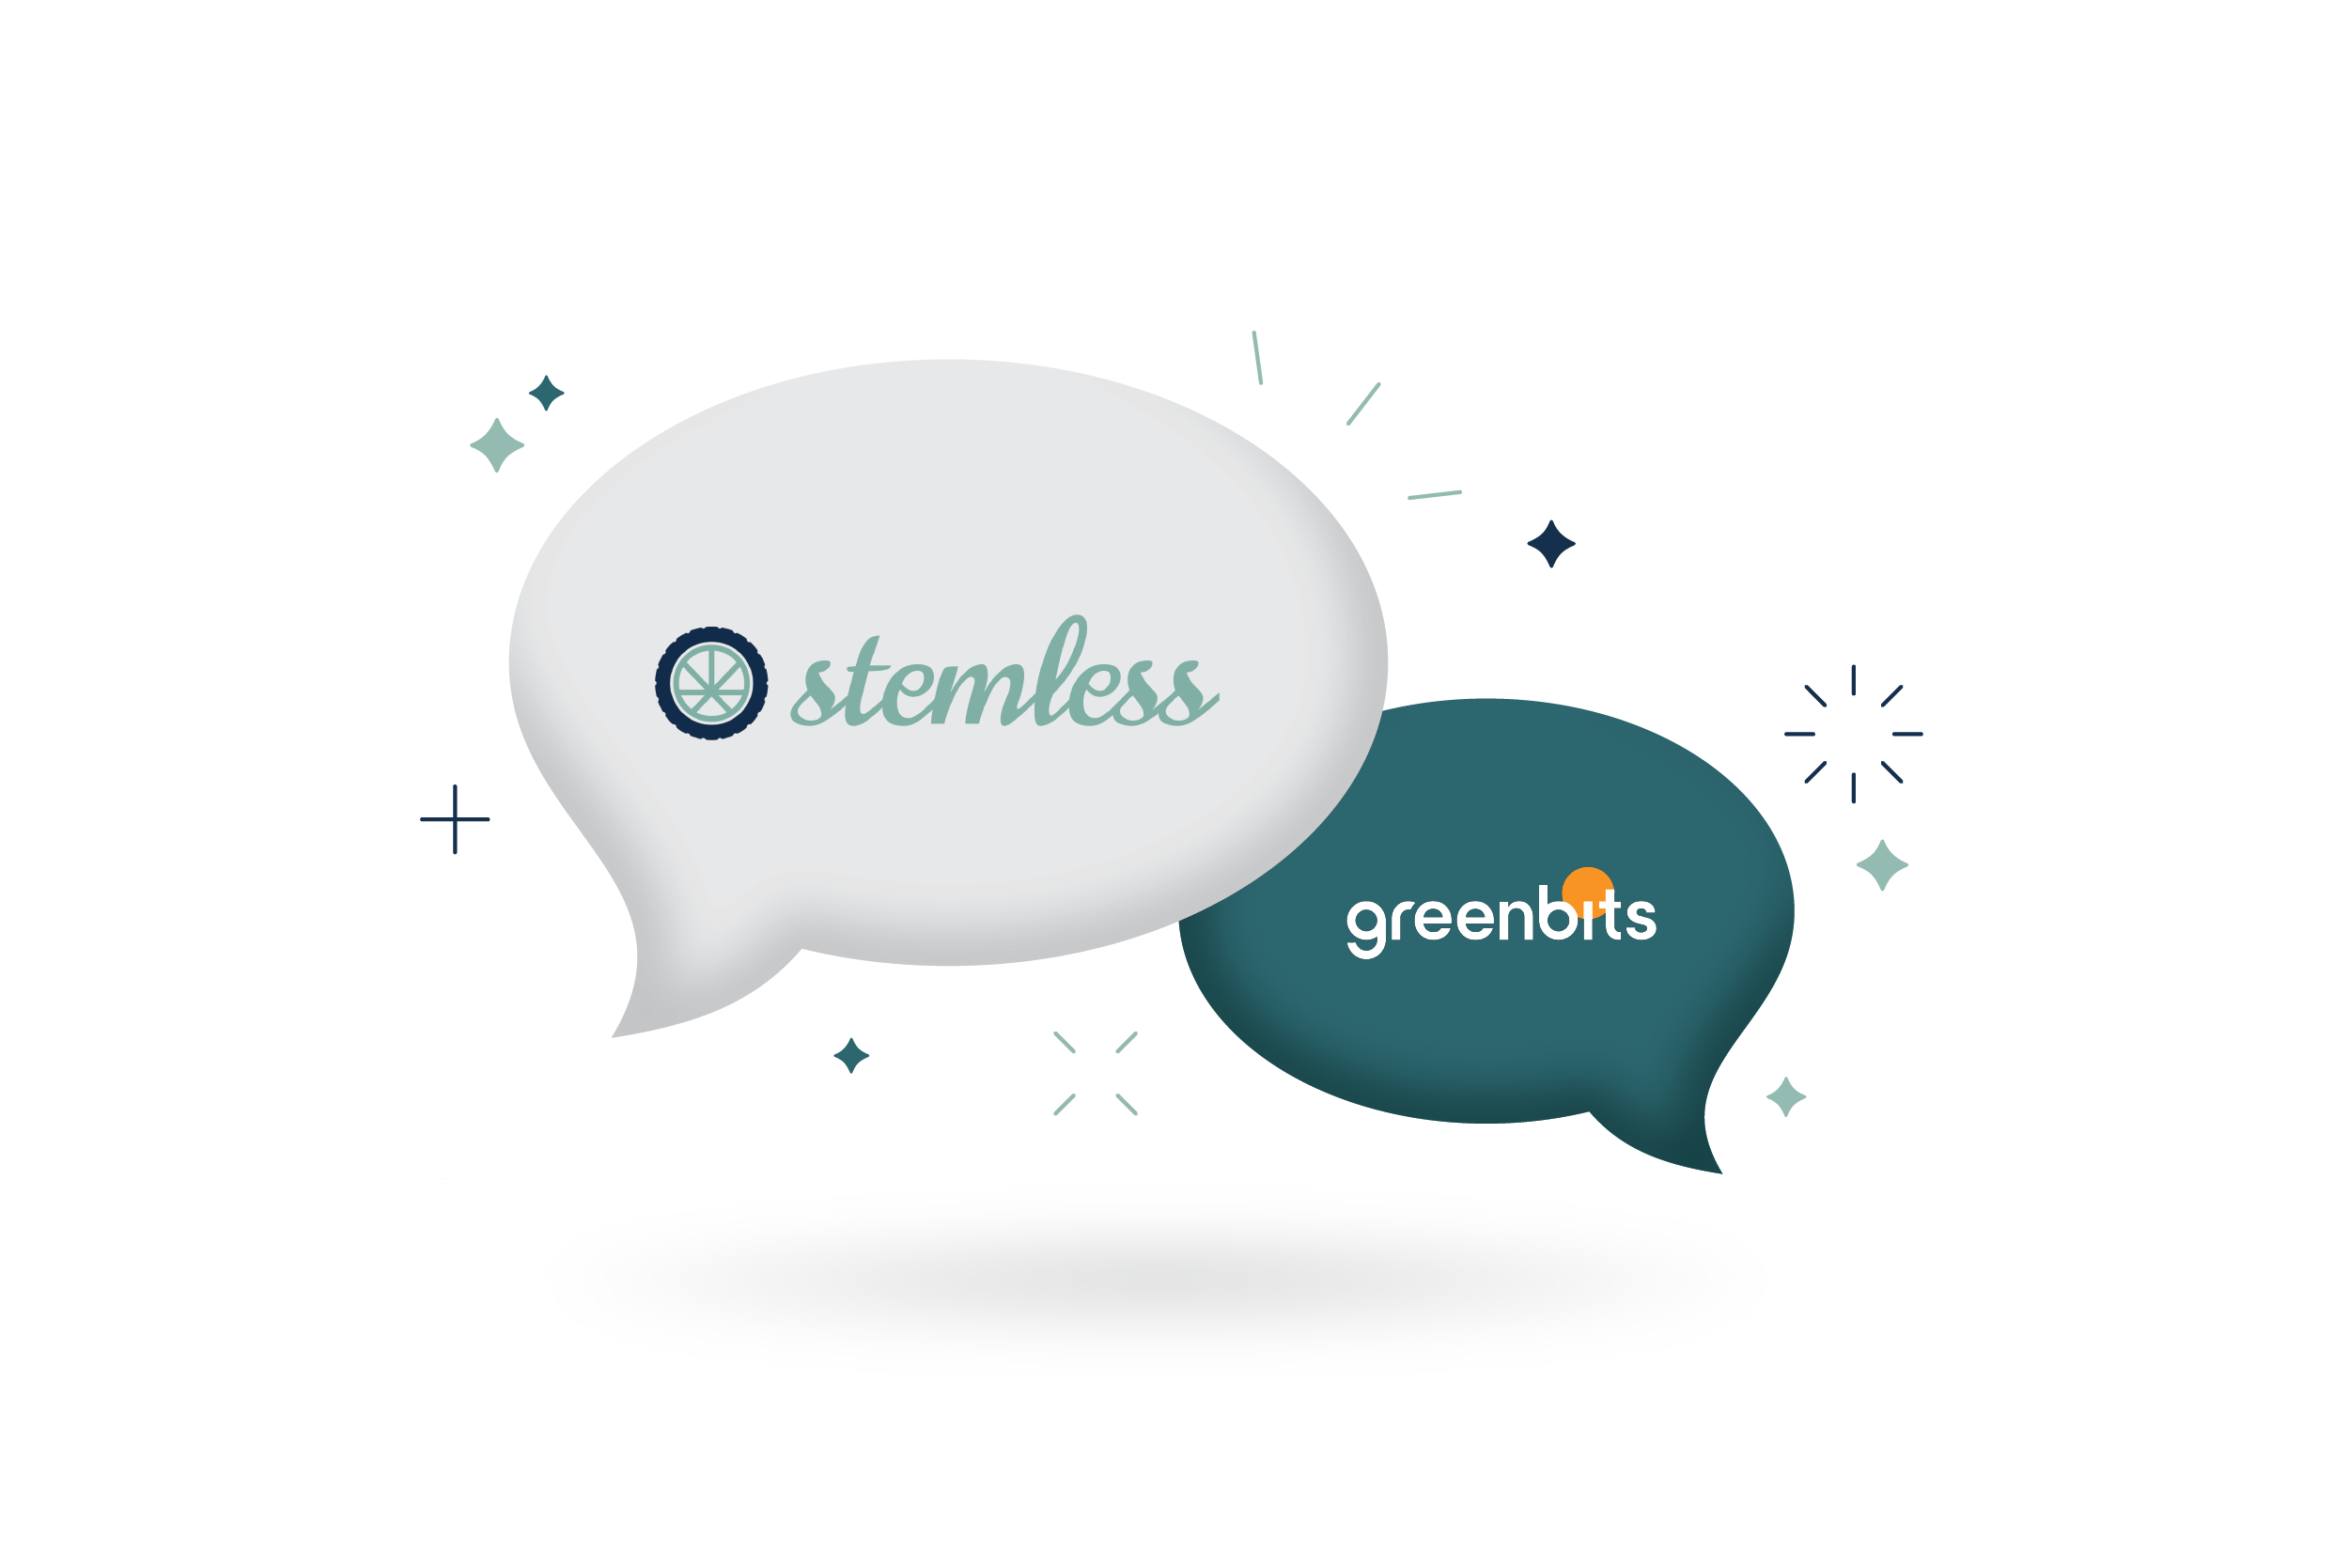 Stemless and Greenbits Power Digital Marketing Strategies